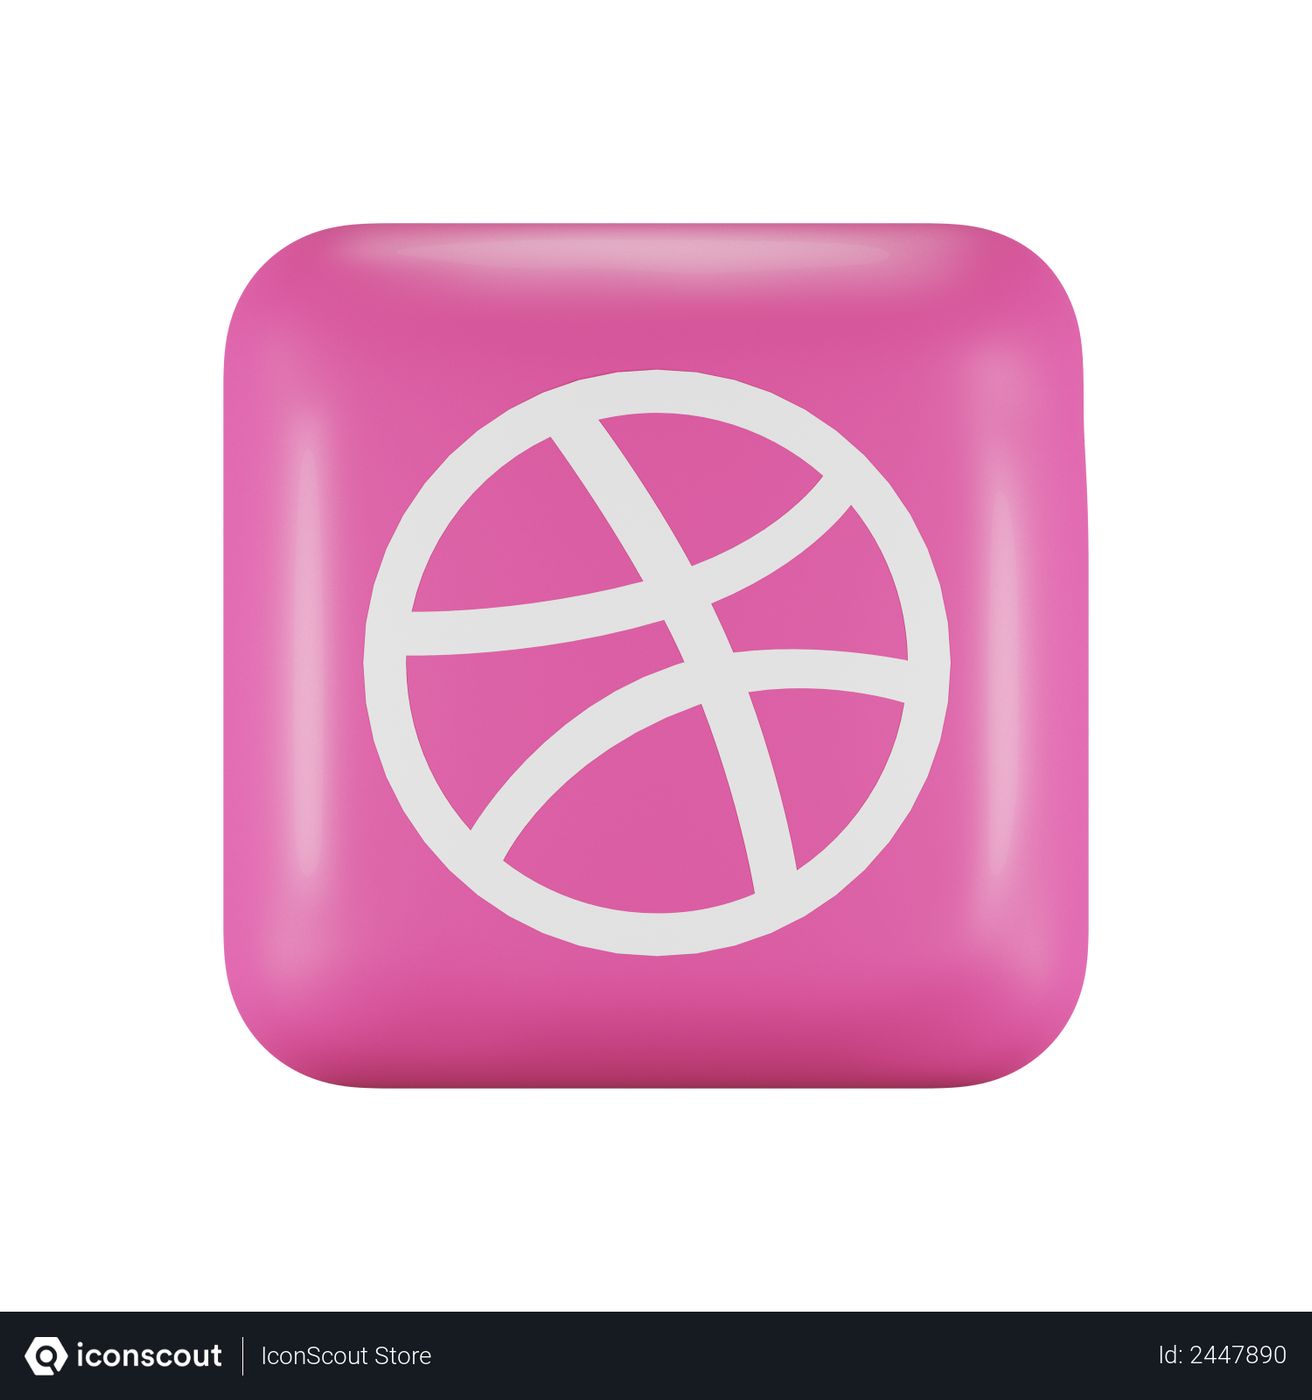 Free Dribbble Logo 3D download in PNG, OBJ or Blend format